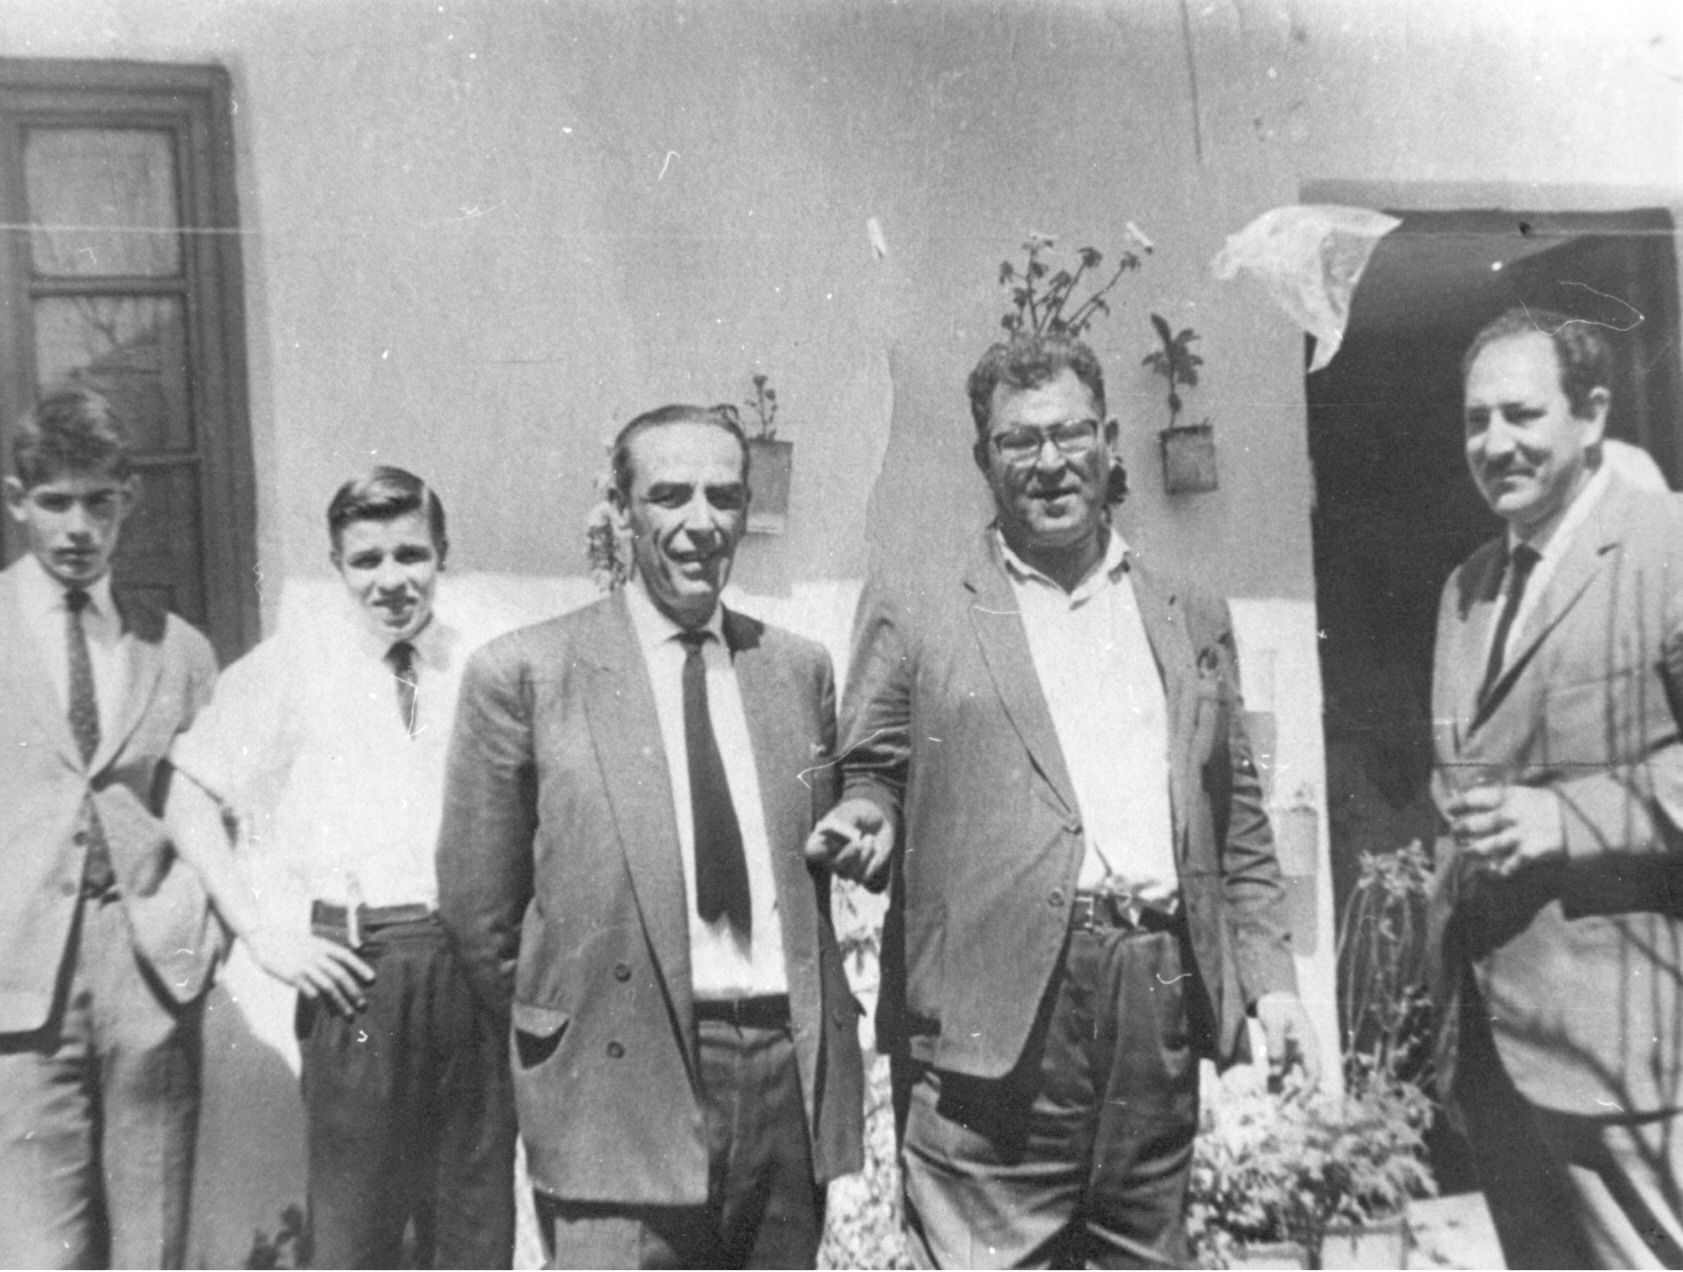 

El alcalde Rosas Surís con Facundo Moreno y Bartolomé Mendoza
en una fiesta de San José de Caideros.
 

